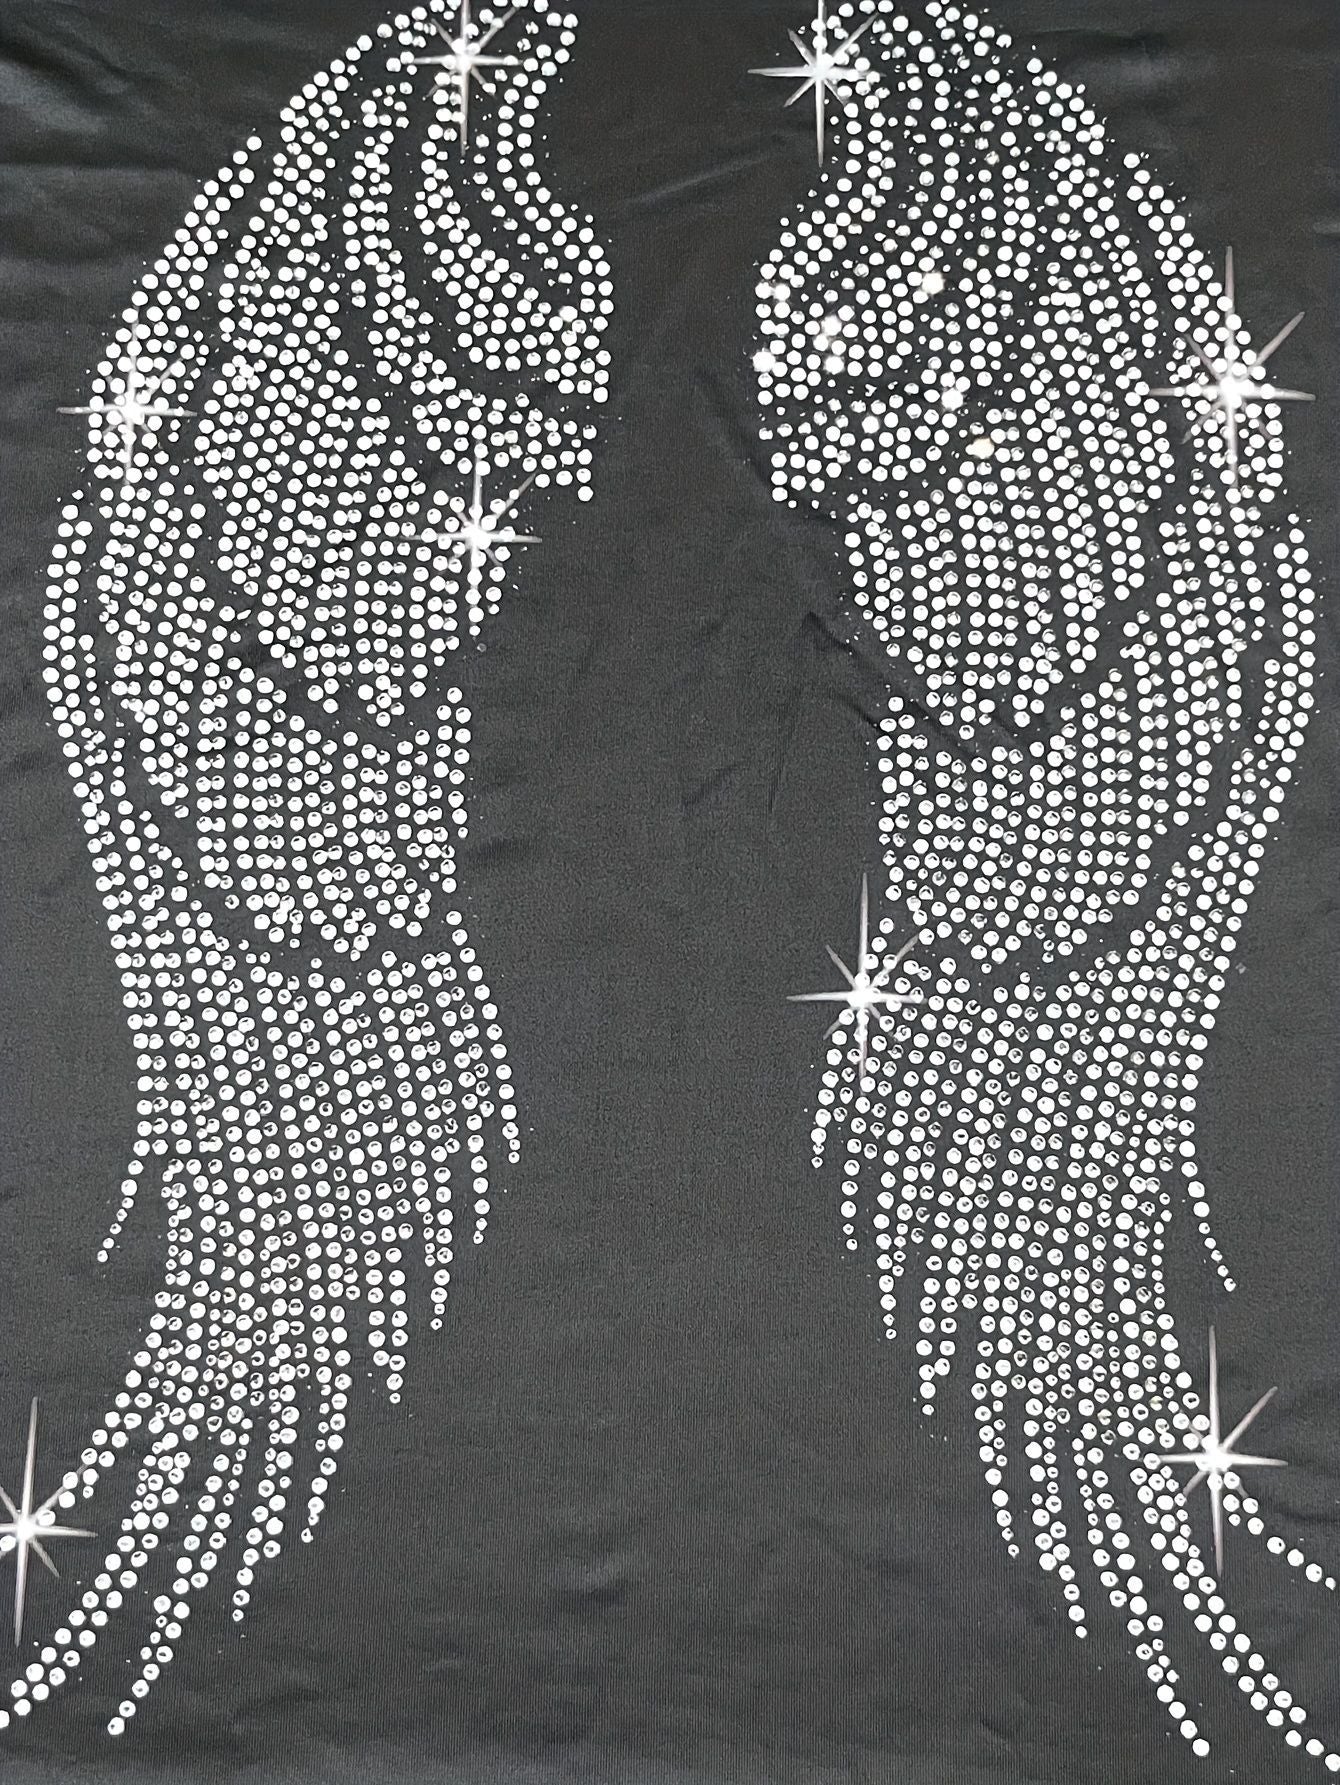 T-shirt femme col rond, avec motif ailes, haut à manches longues